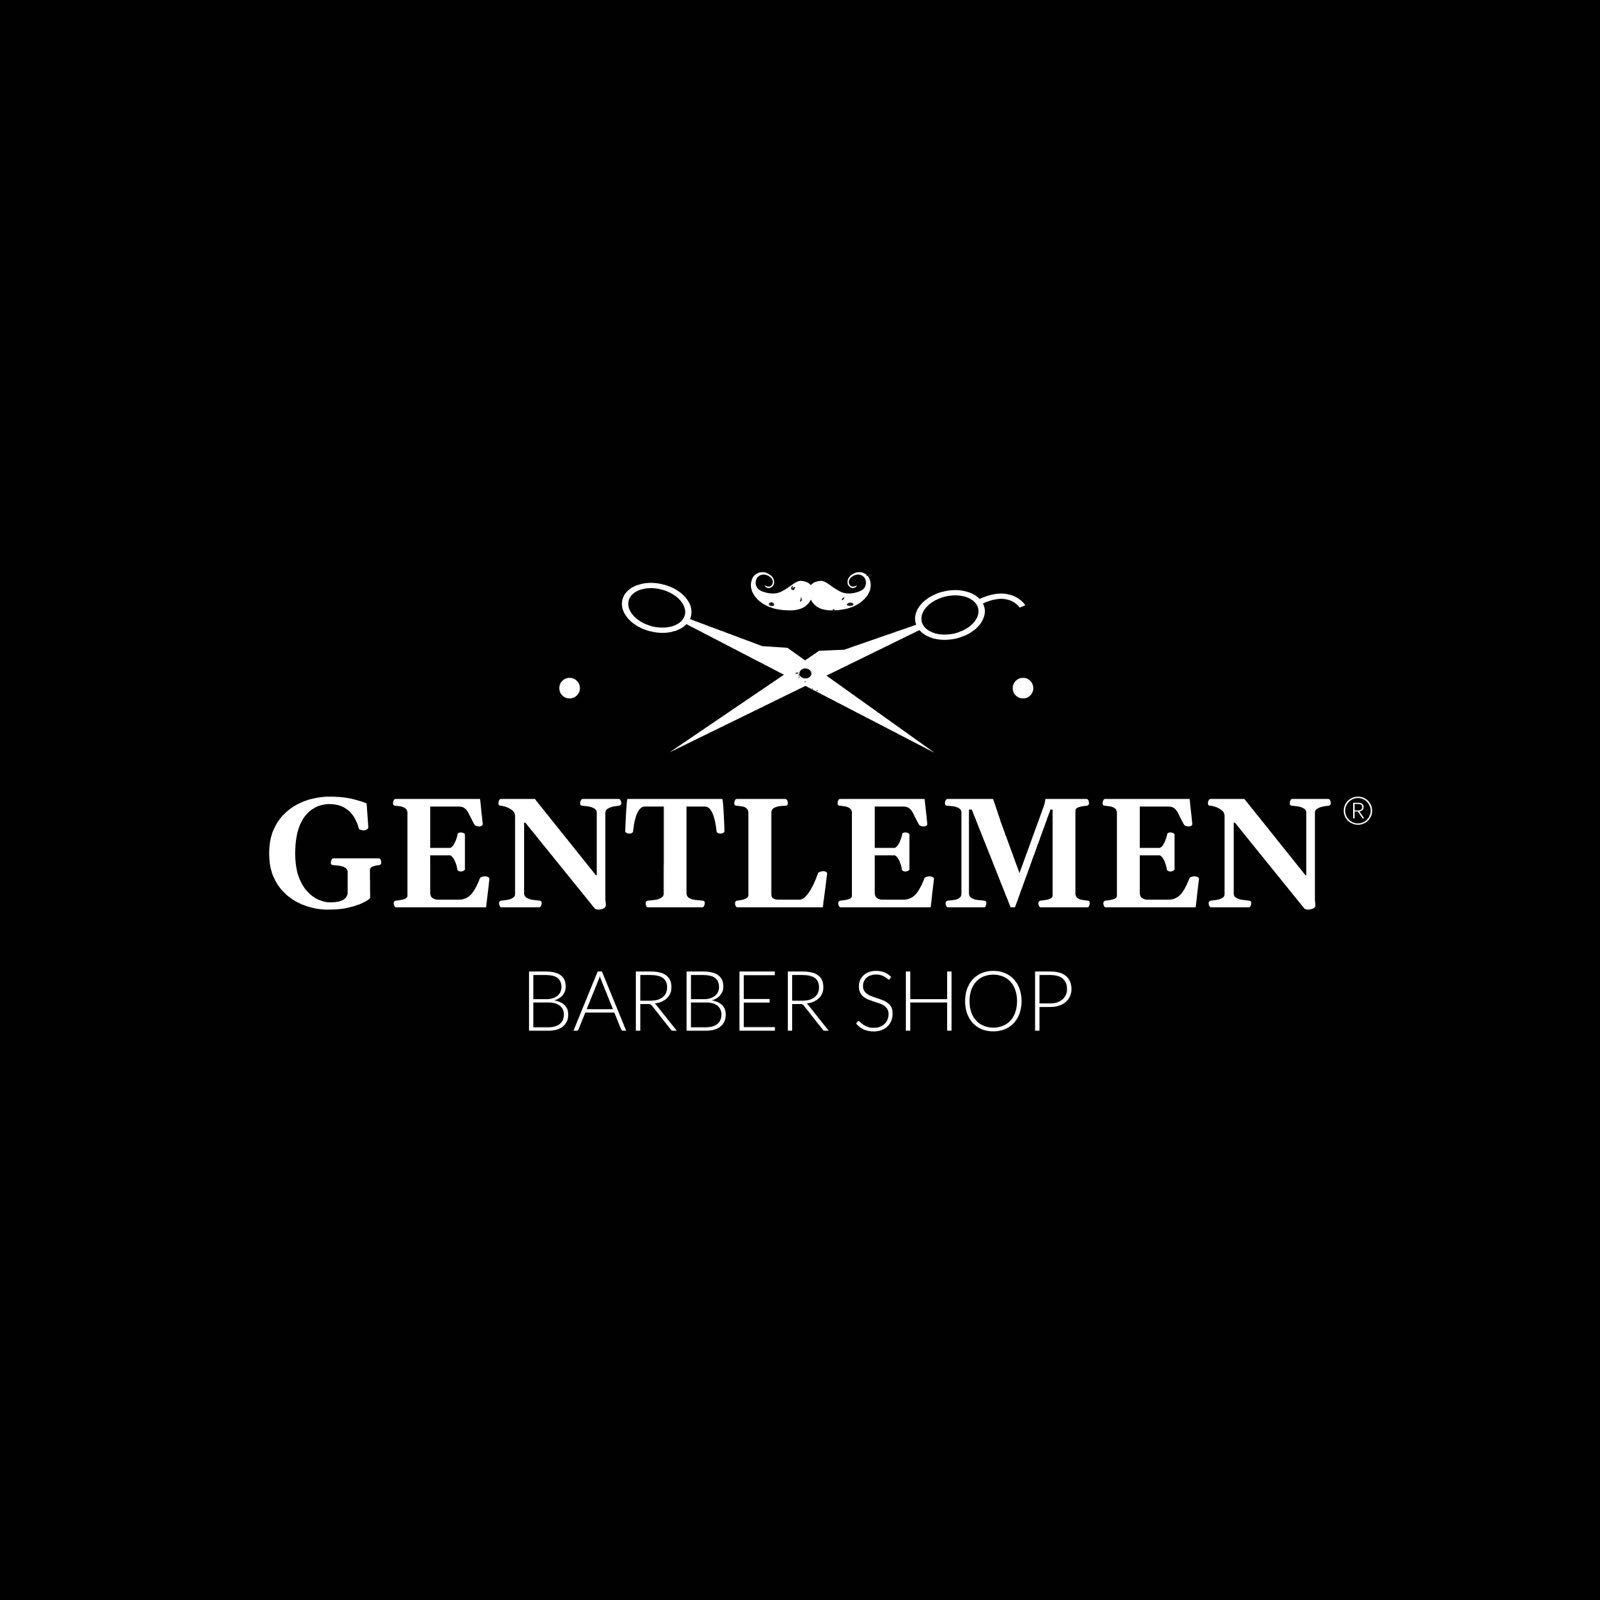 Gentlemen Barber Shop Łódź Cedry, Krzysztofa Cedry 6, LU6, 91-129, Łódź, Bałuty